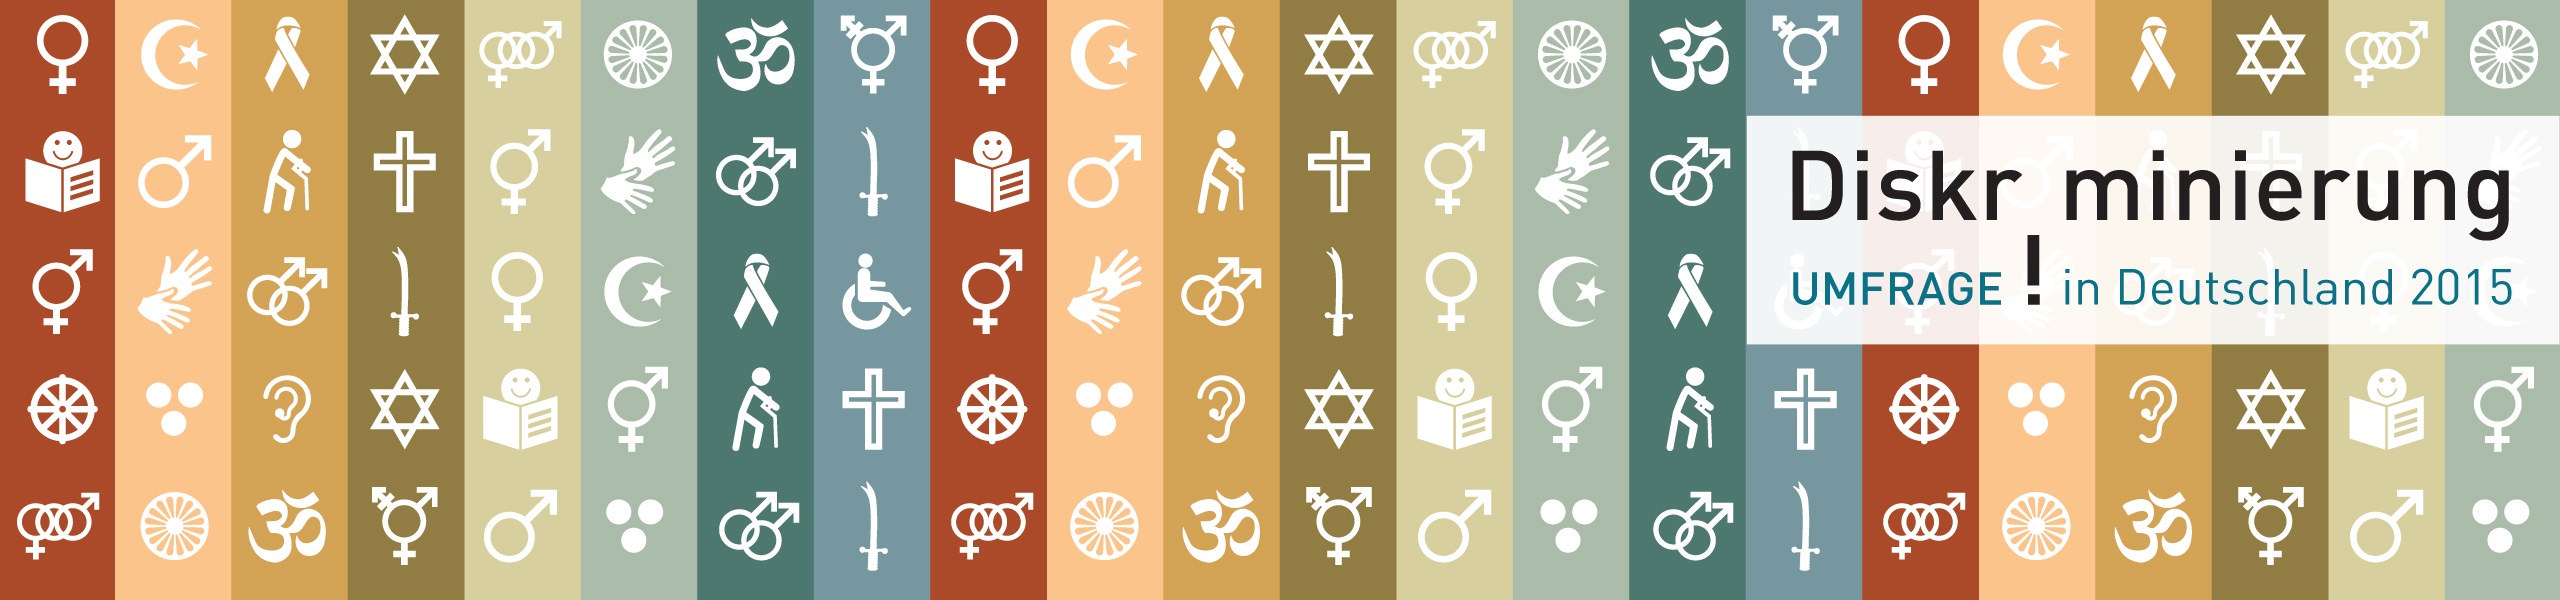 Symbole zum Thema Diskiminierung auf verschiedenfarbigen Streifen mit der Aufschrift Diskriminierung